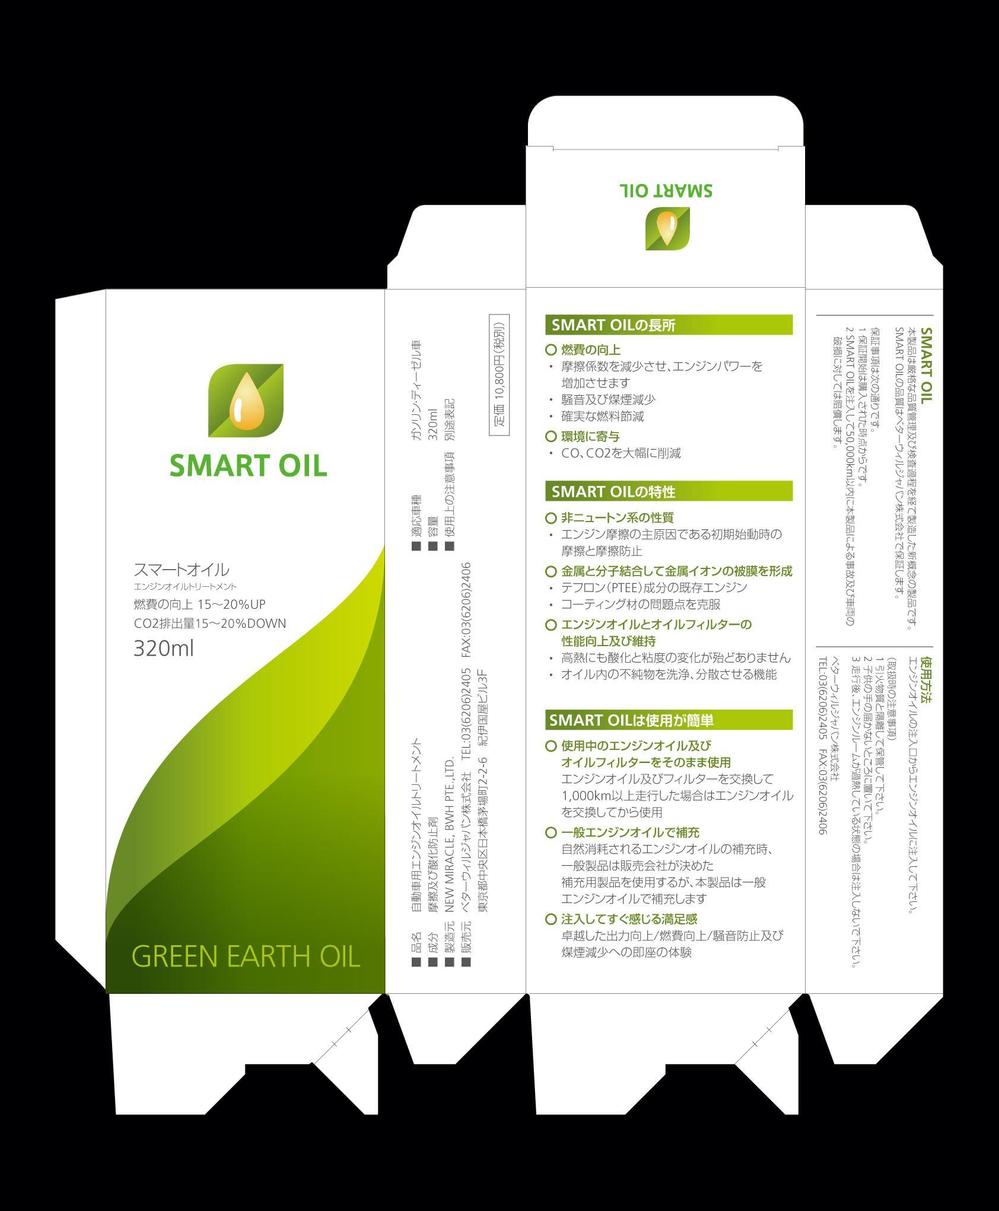 エンジンオイル添加剤「SMART OIL」の新パッケージ制作